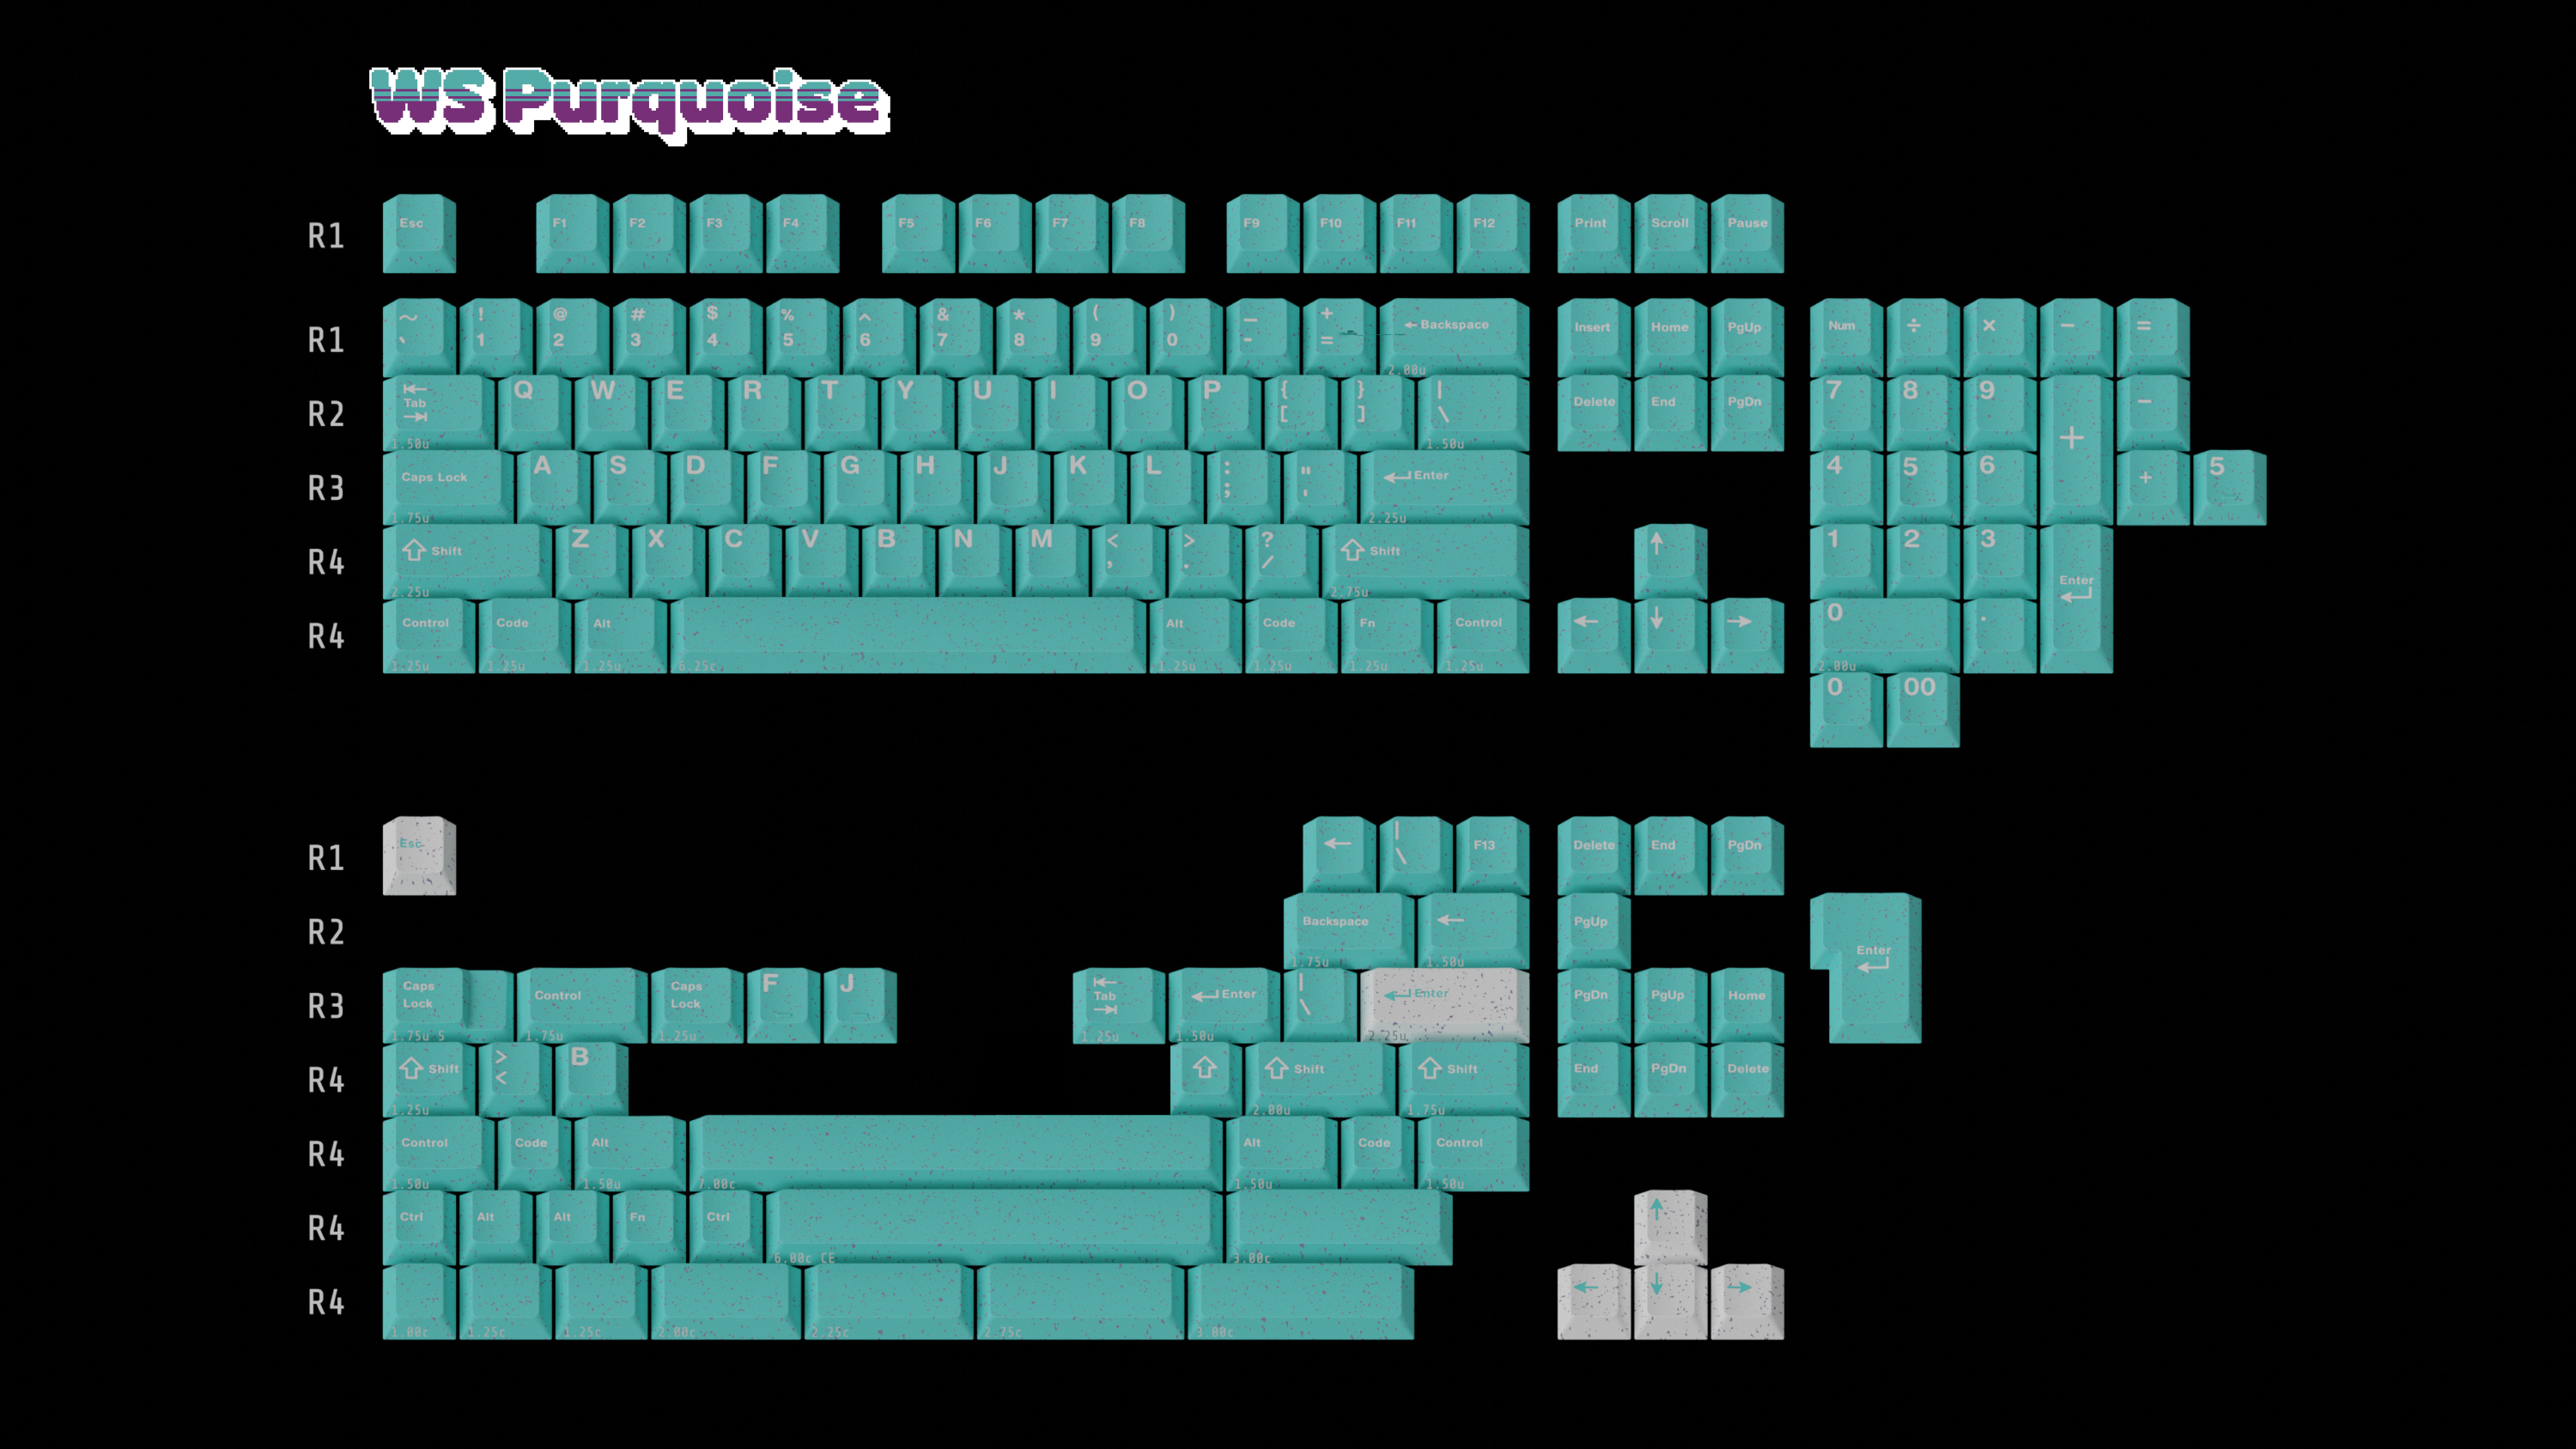 WS Porquoise Keycaps